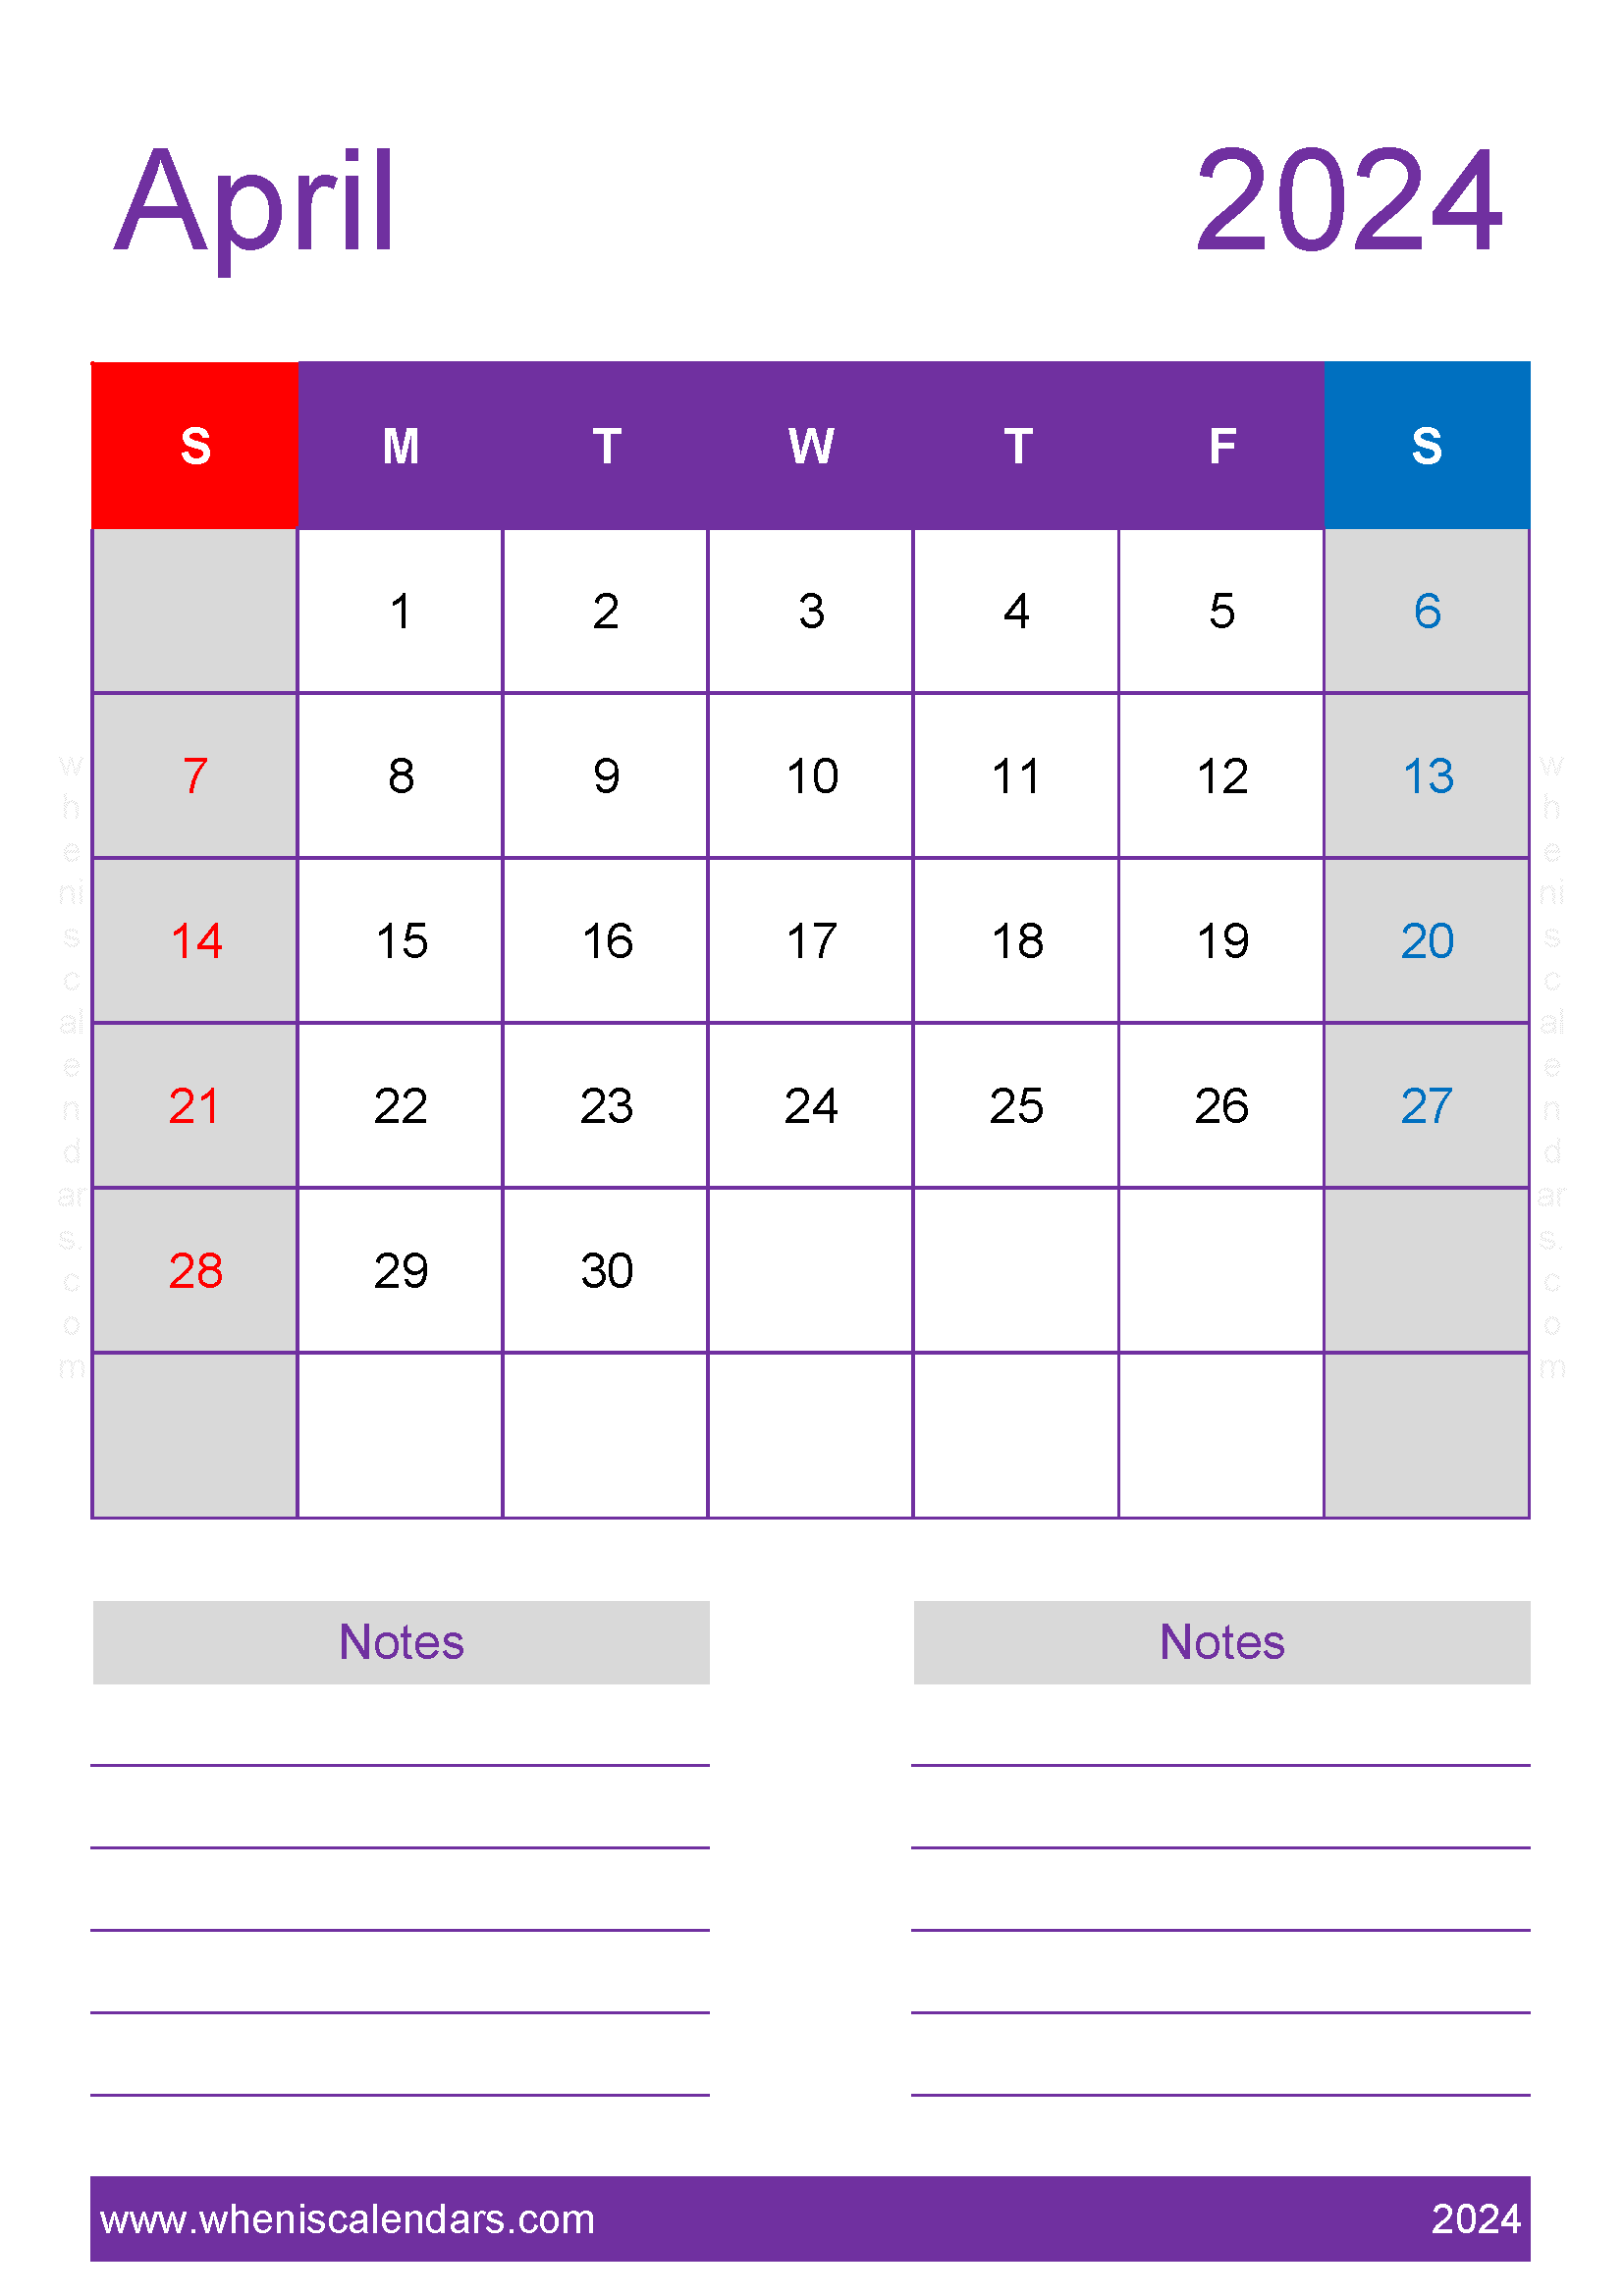 April 2024 Calendar large print Monthly Calendar